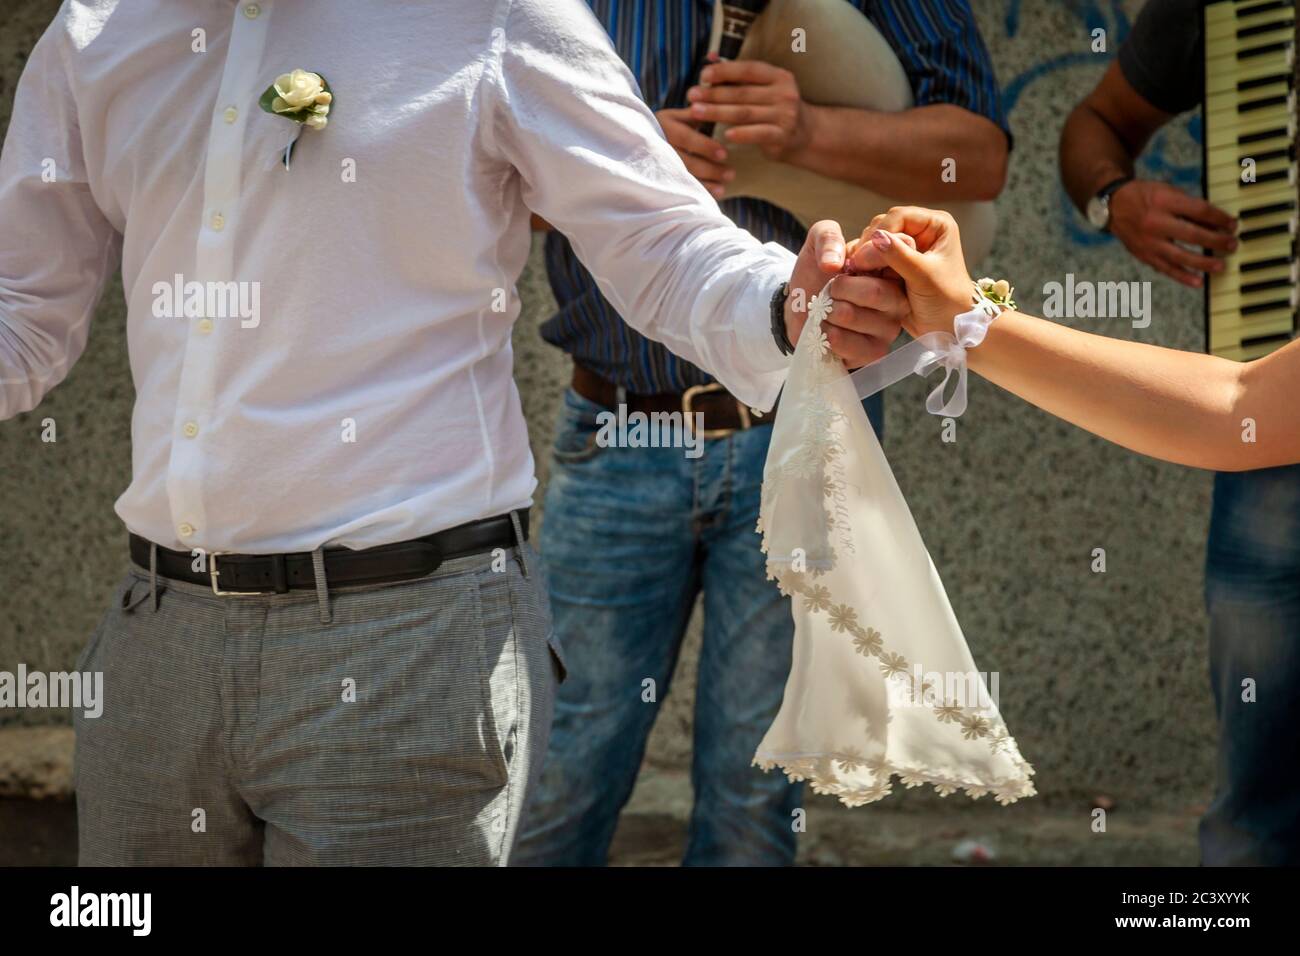 La danse se produit à tout moment lors d'un mariage bulgare Banque D'Images